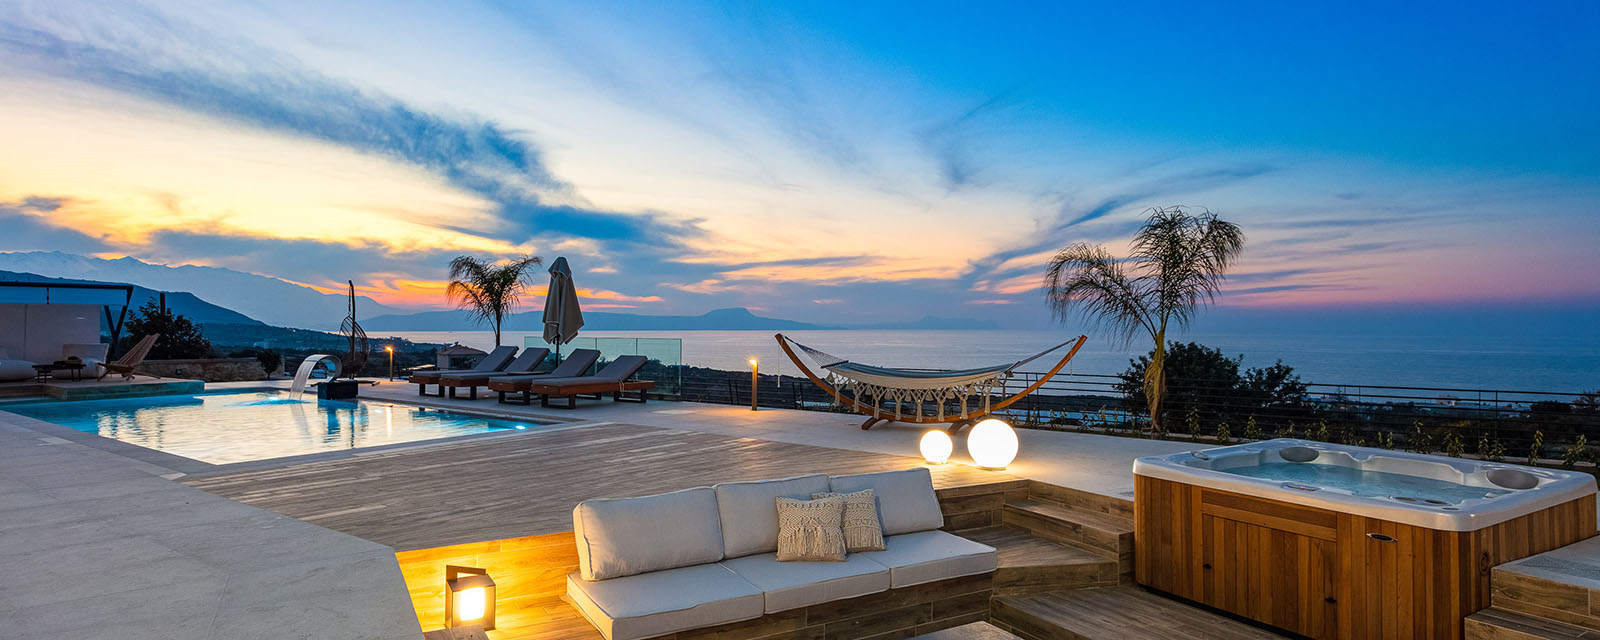 Luxurioeses Ferienhaus Auf Kreta Mieten Mageia Exclusive Residence 1